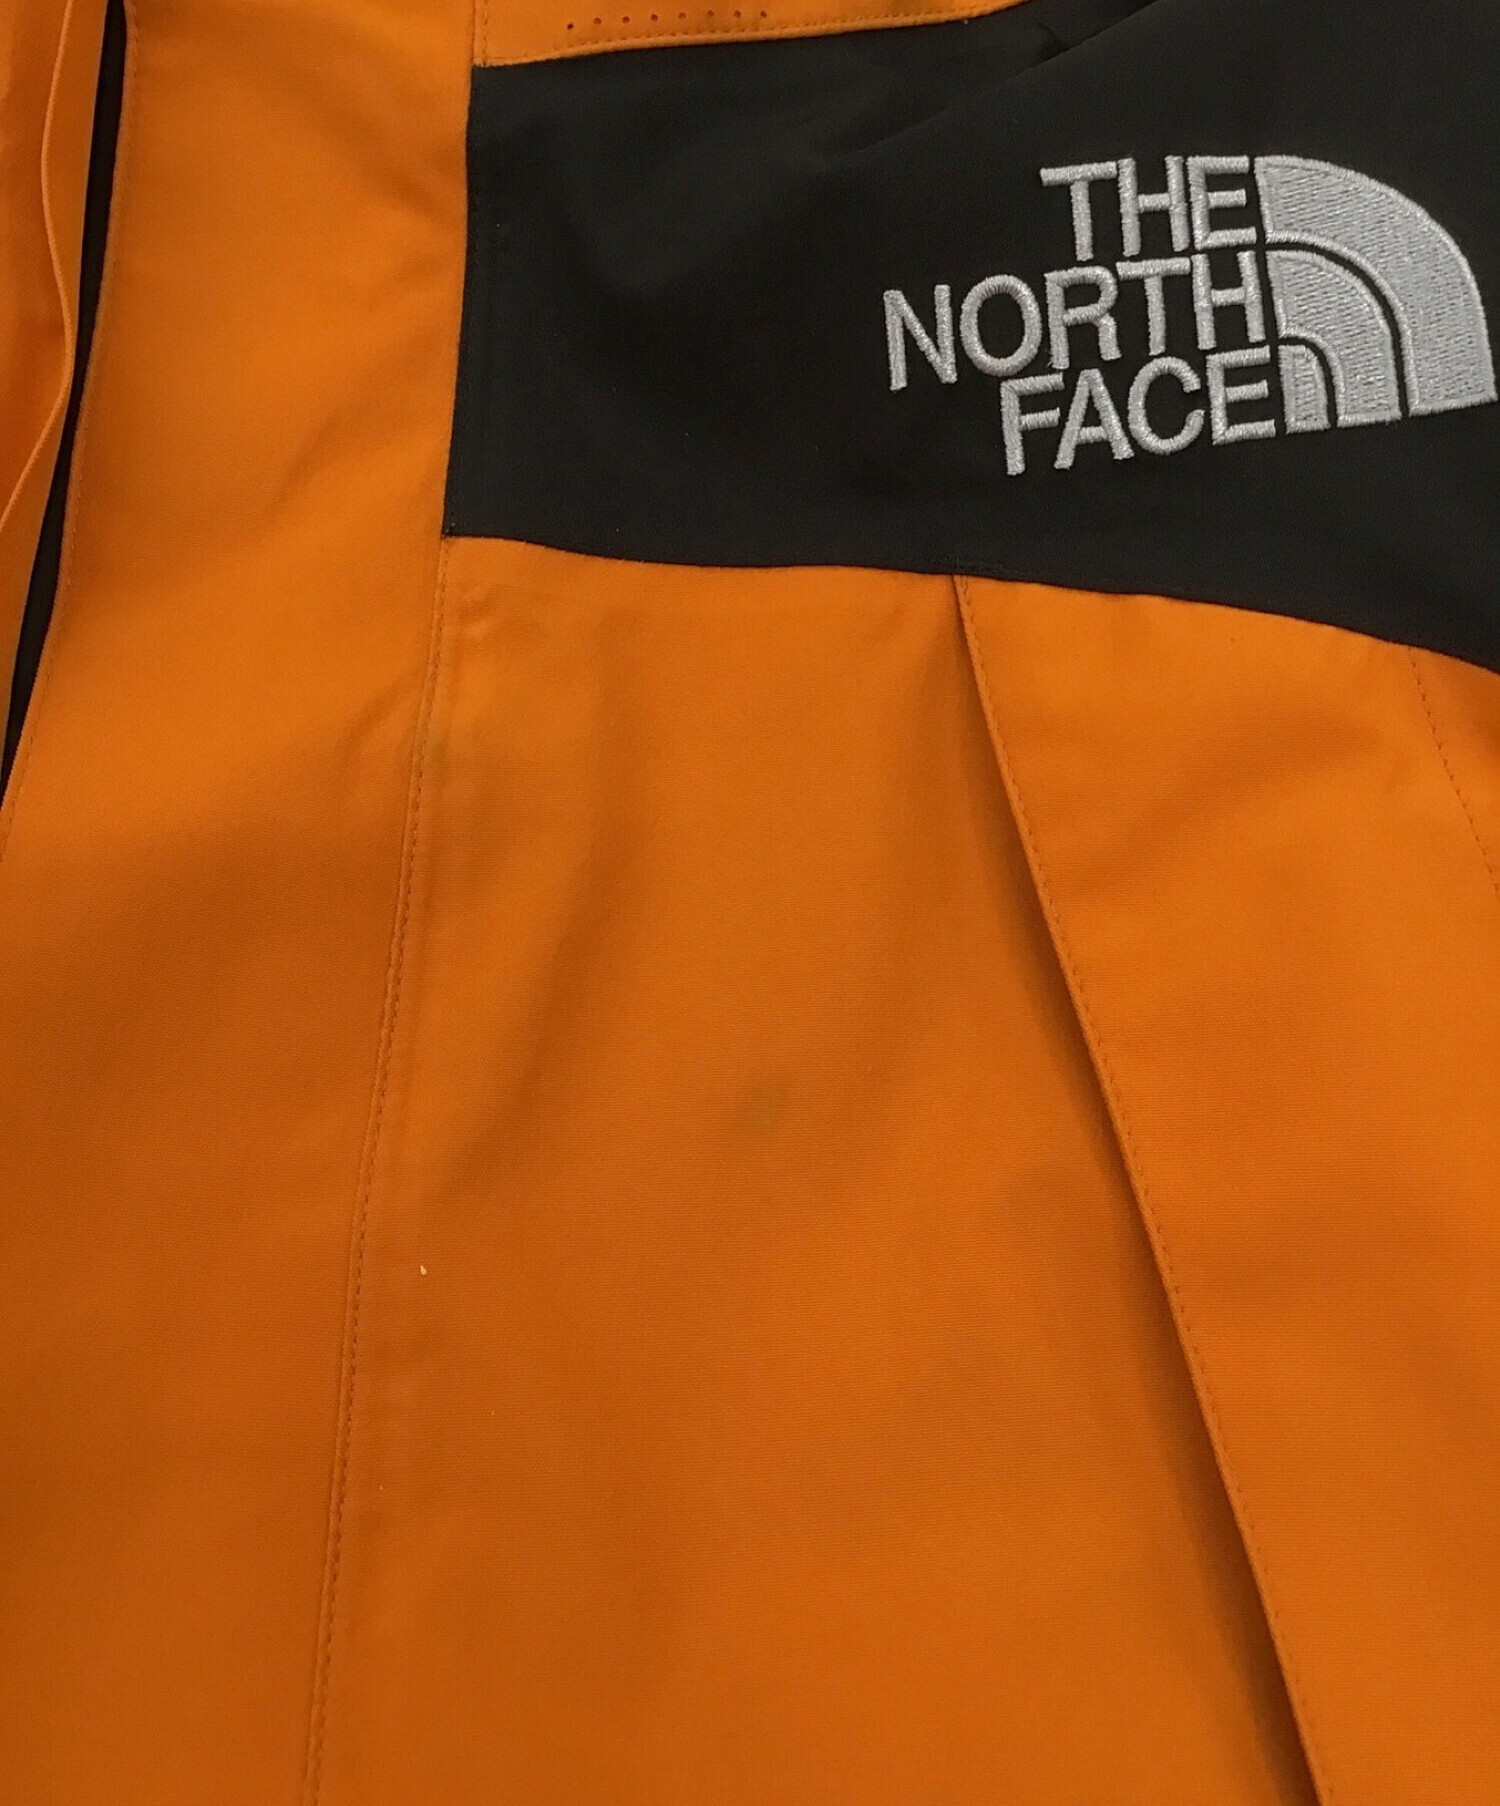 THE NORTH FACE (ザ ノース フェイス) マウンテンジャケット オレンジ×ブラック サイズ:S